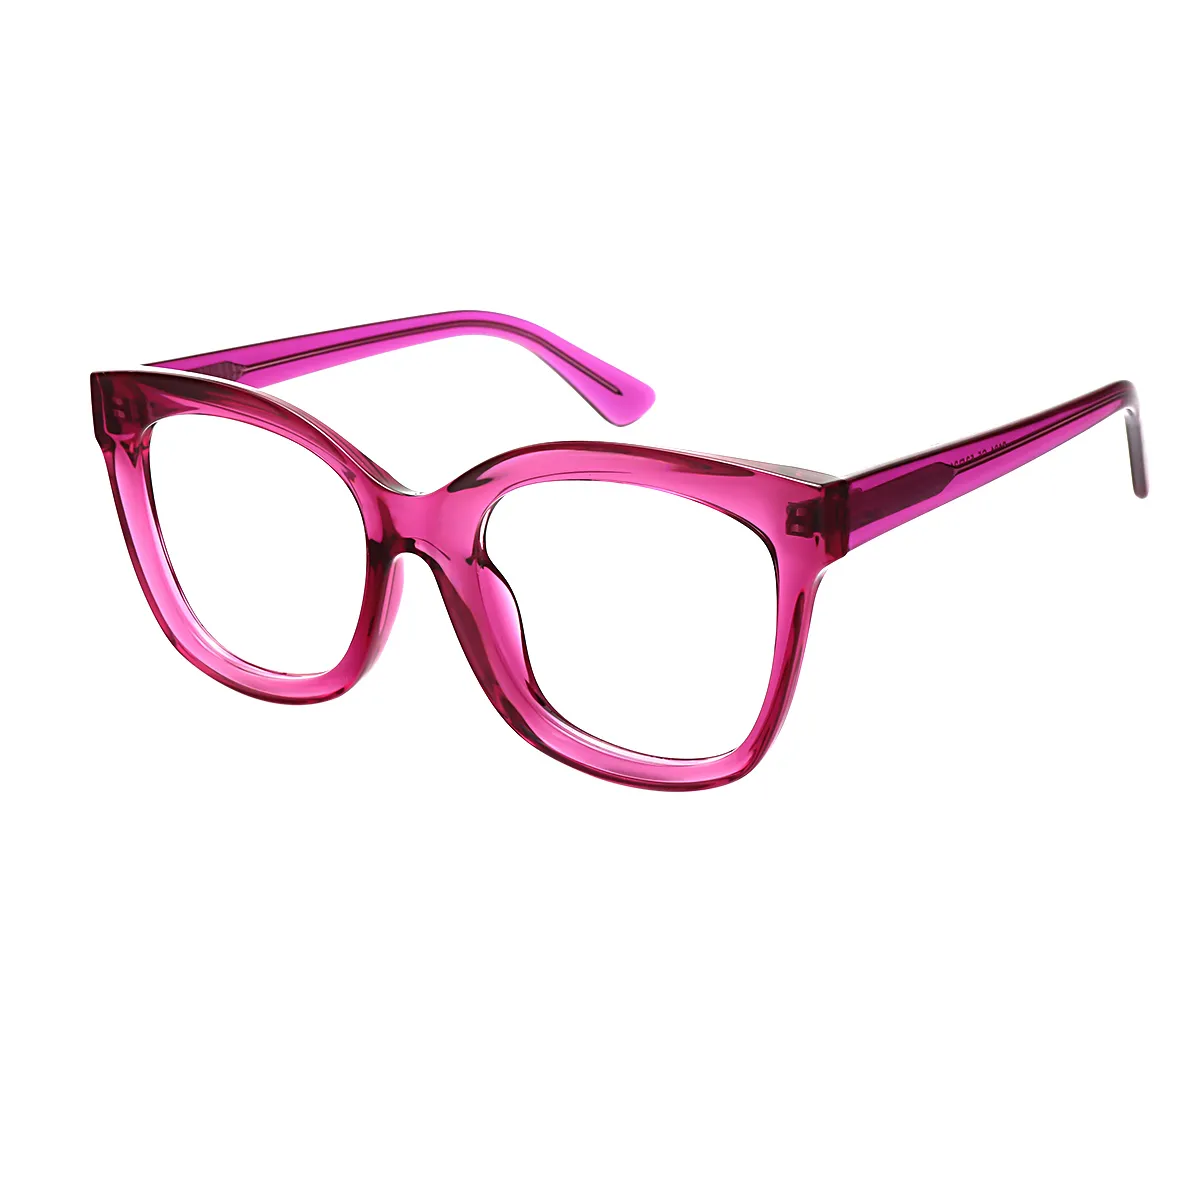 Classic Cat-eye  Glasses for Women